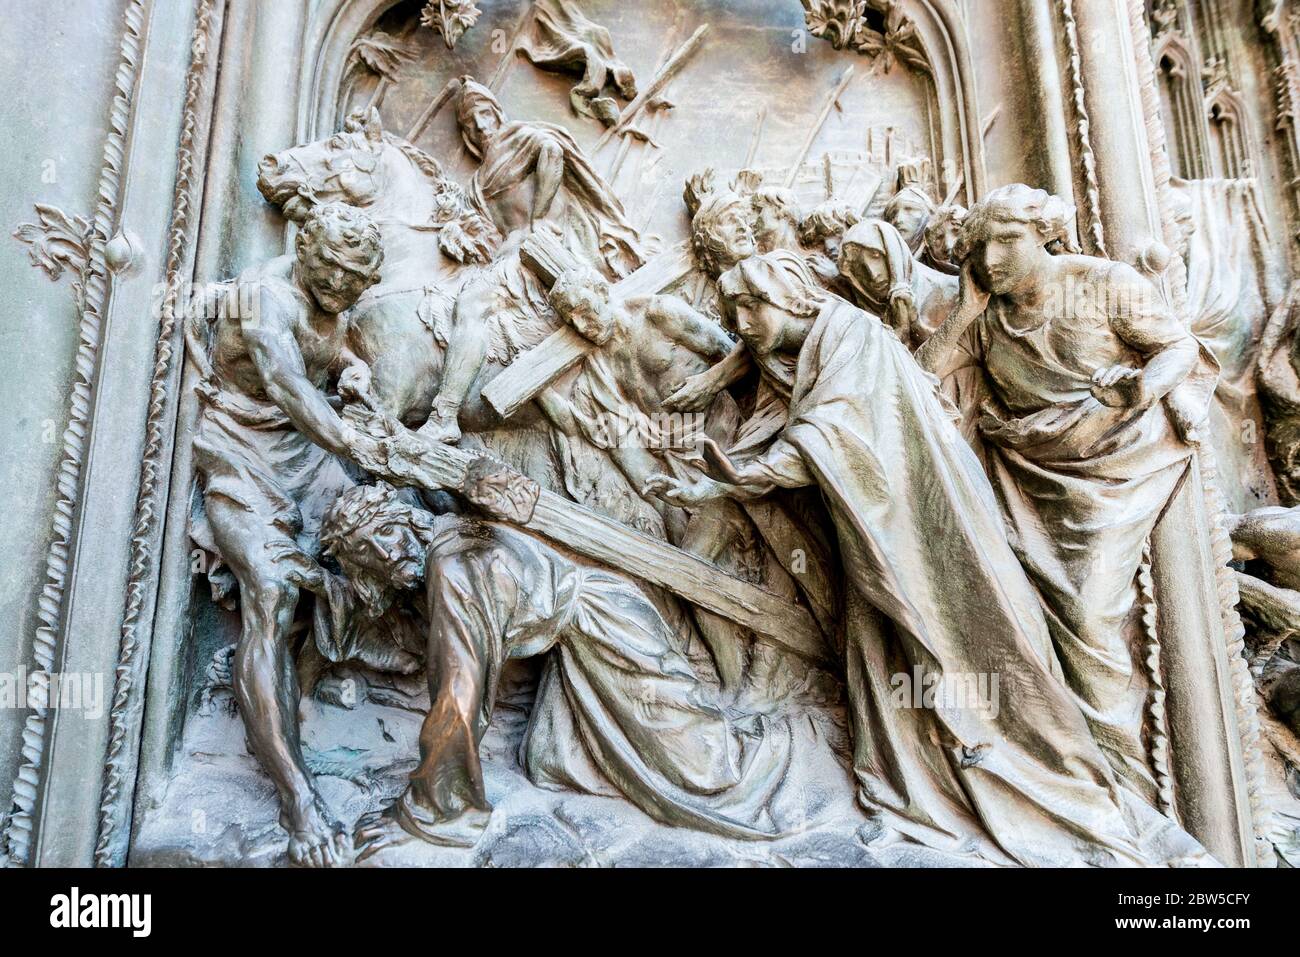 MILÁN, ITALIA - 16, MARZO de 2018: Imagen horizontal de la obra religiosa en las paredes del Duomo di Milano, una importante catedral católica en Milán, Italia Foto de stock